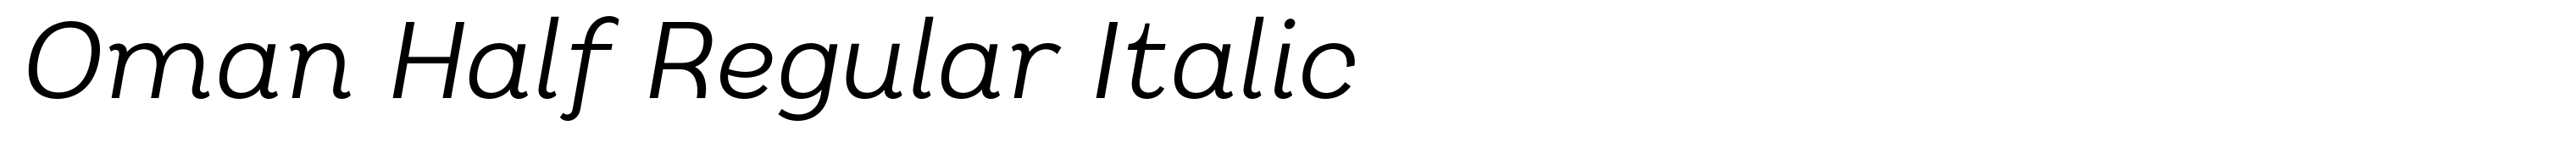 Oman Half Regular Italic